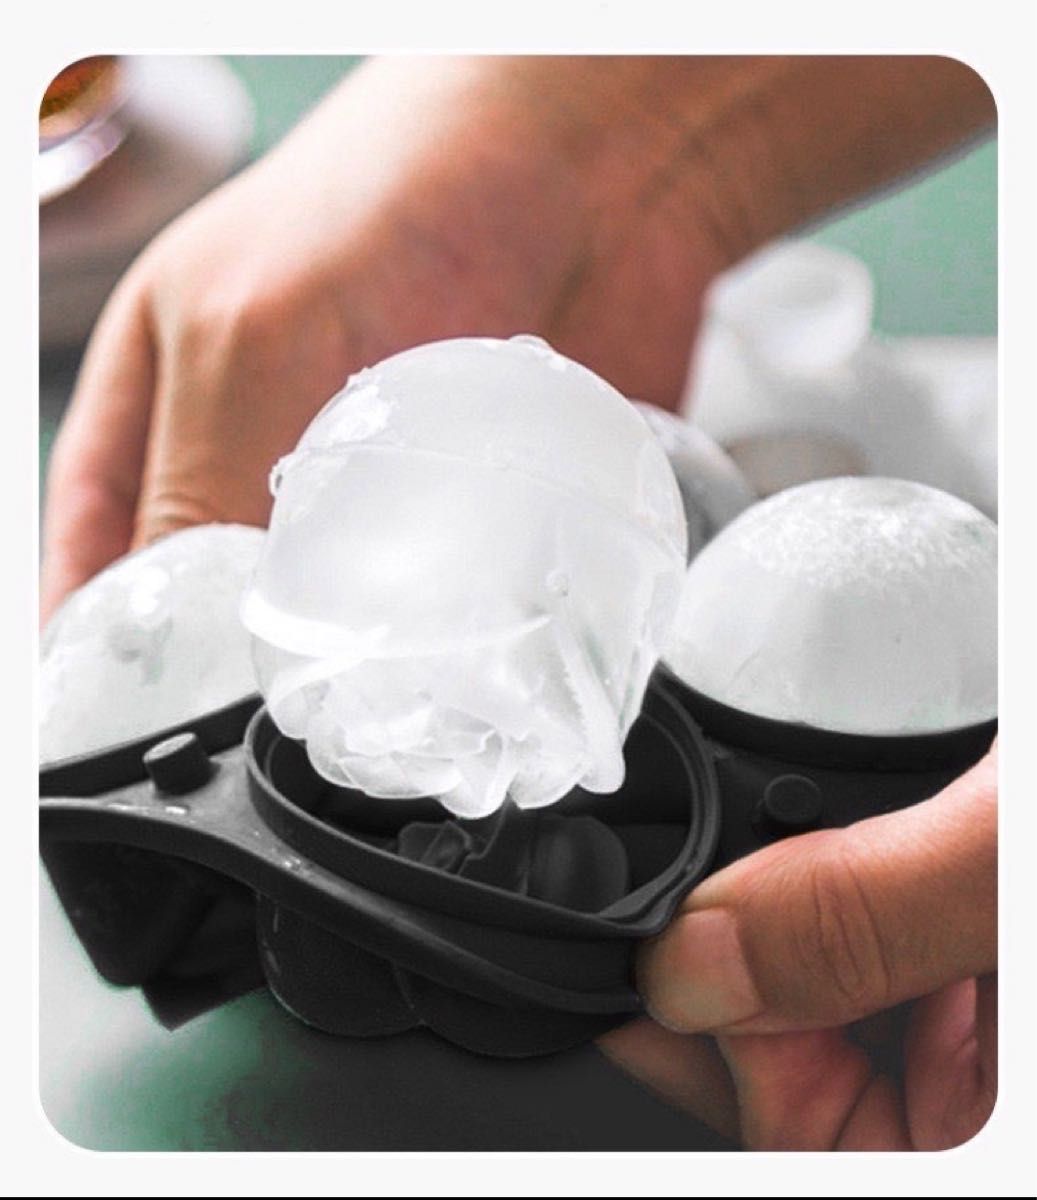  バラ製氷皿 4個 製氷機 氷 バラ型 耐熱性 耐久性 映え 可愛い ブラック